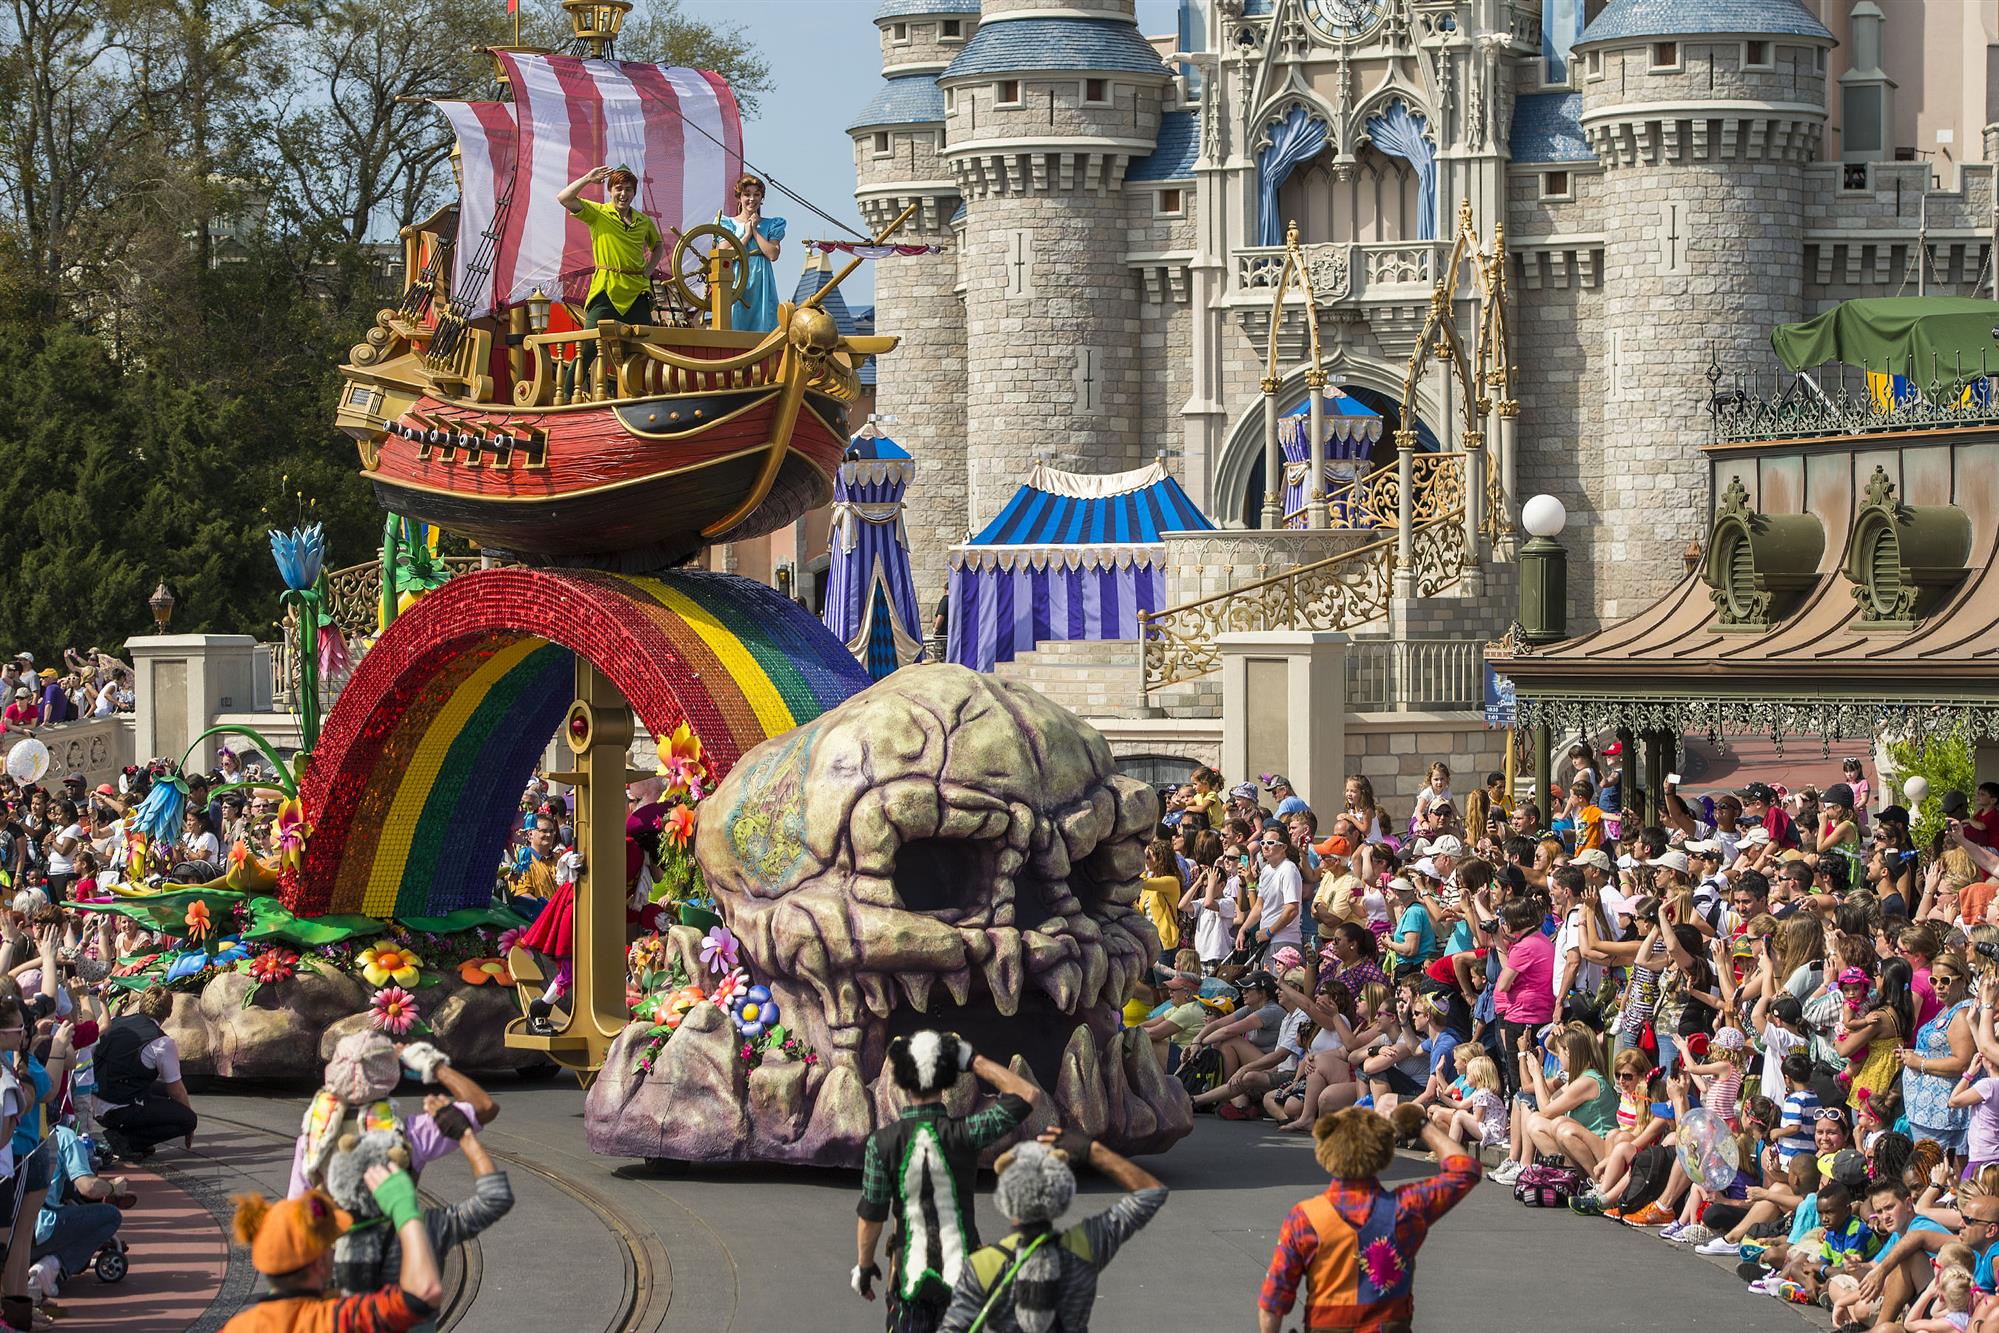 Disney Festival of Fantasy Parade - Magic Kingdom - LaughingPlace.com